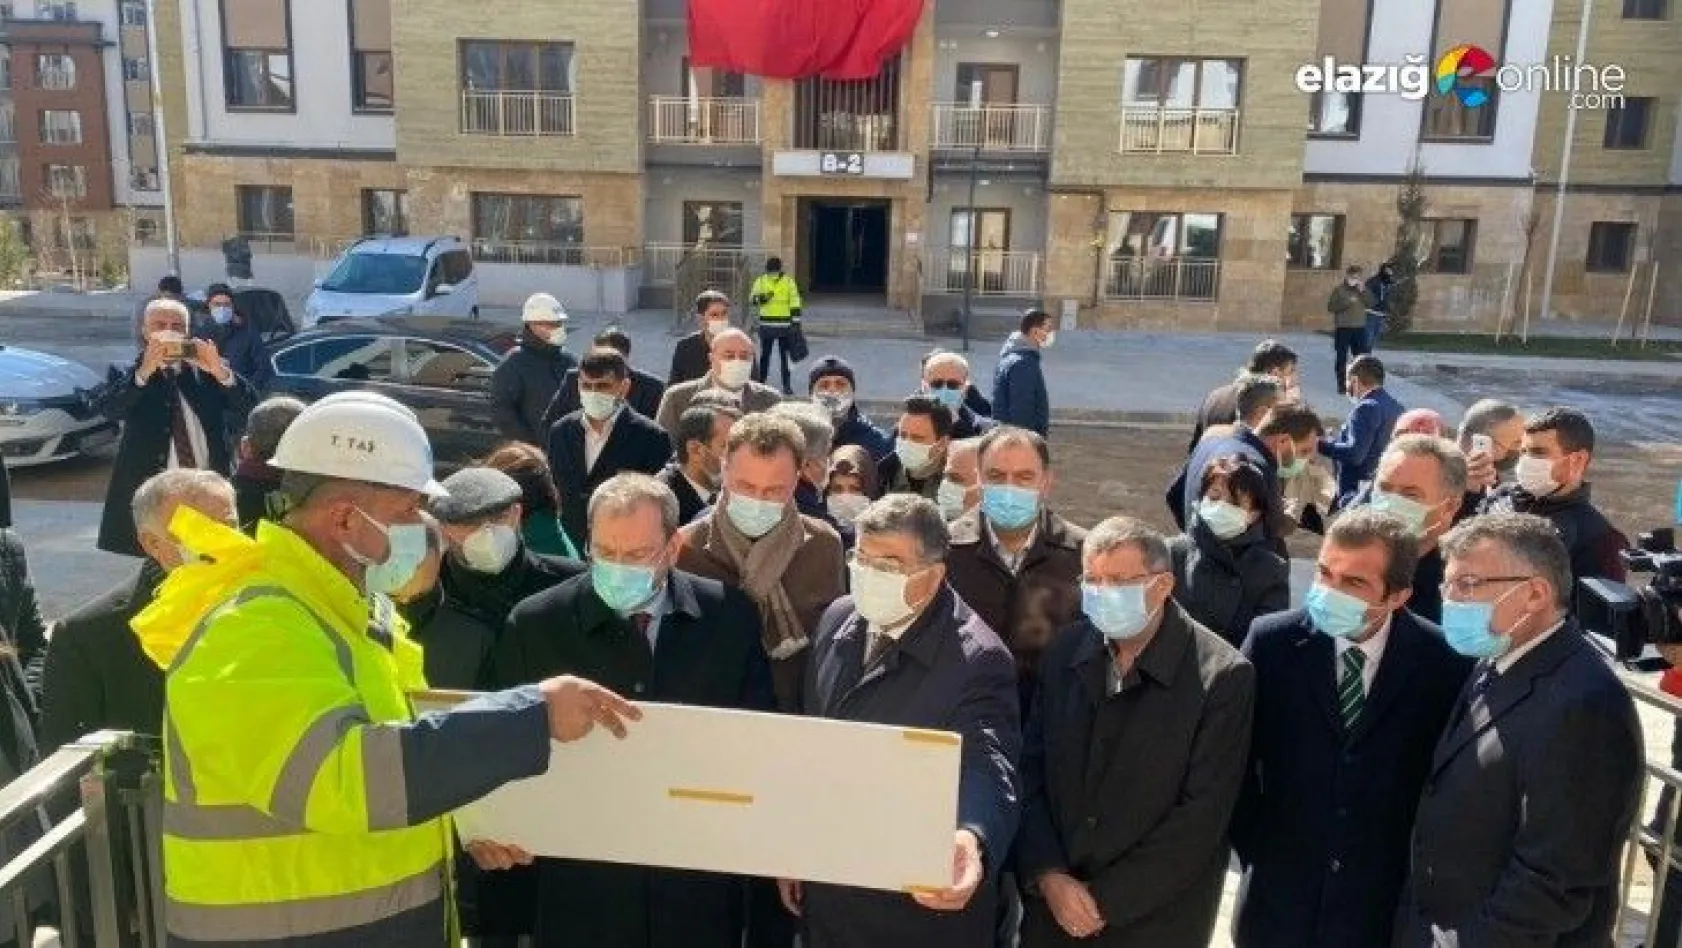 TBMM Deprem Araştırma Komisyonu, Elazığ'da saha incelemesi yaptı